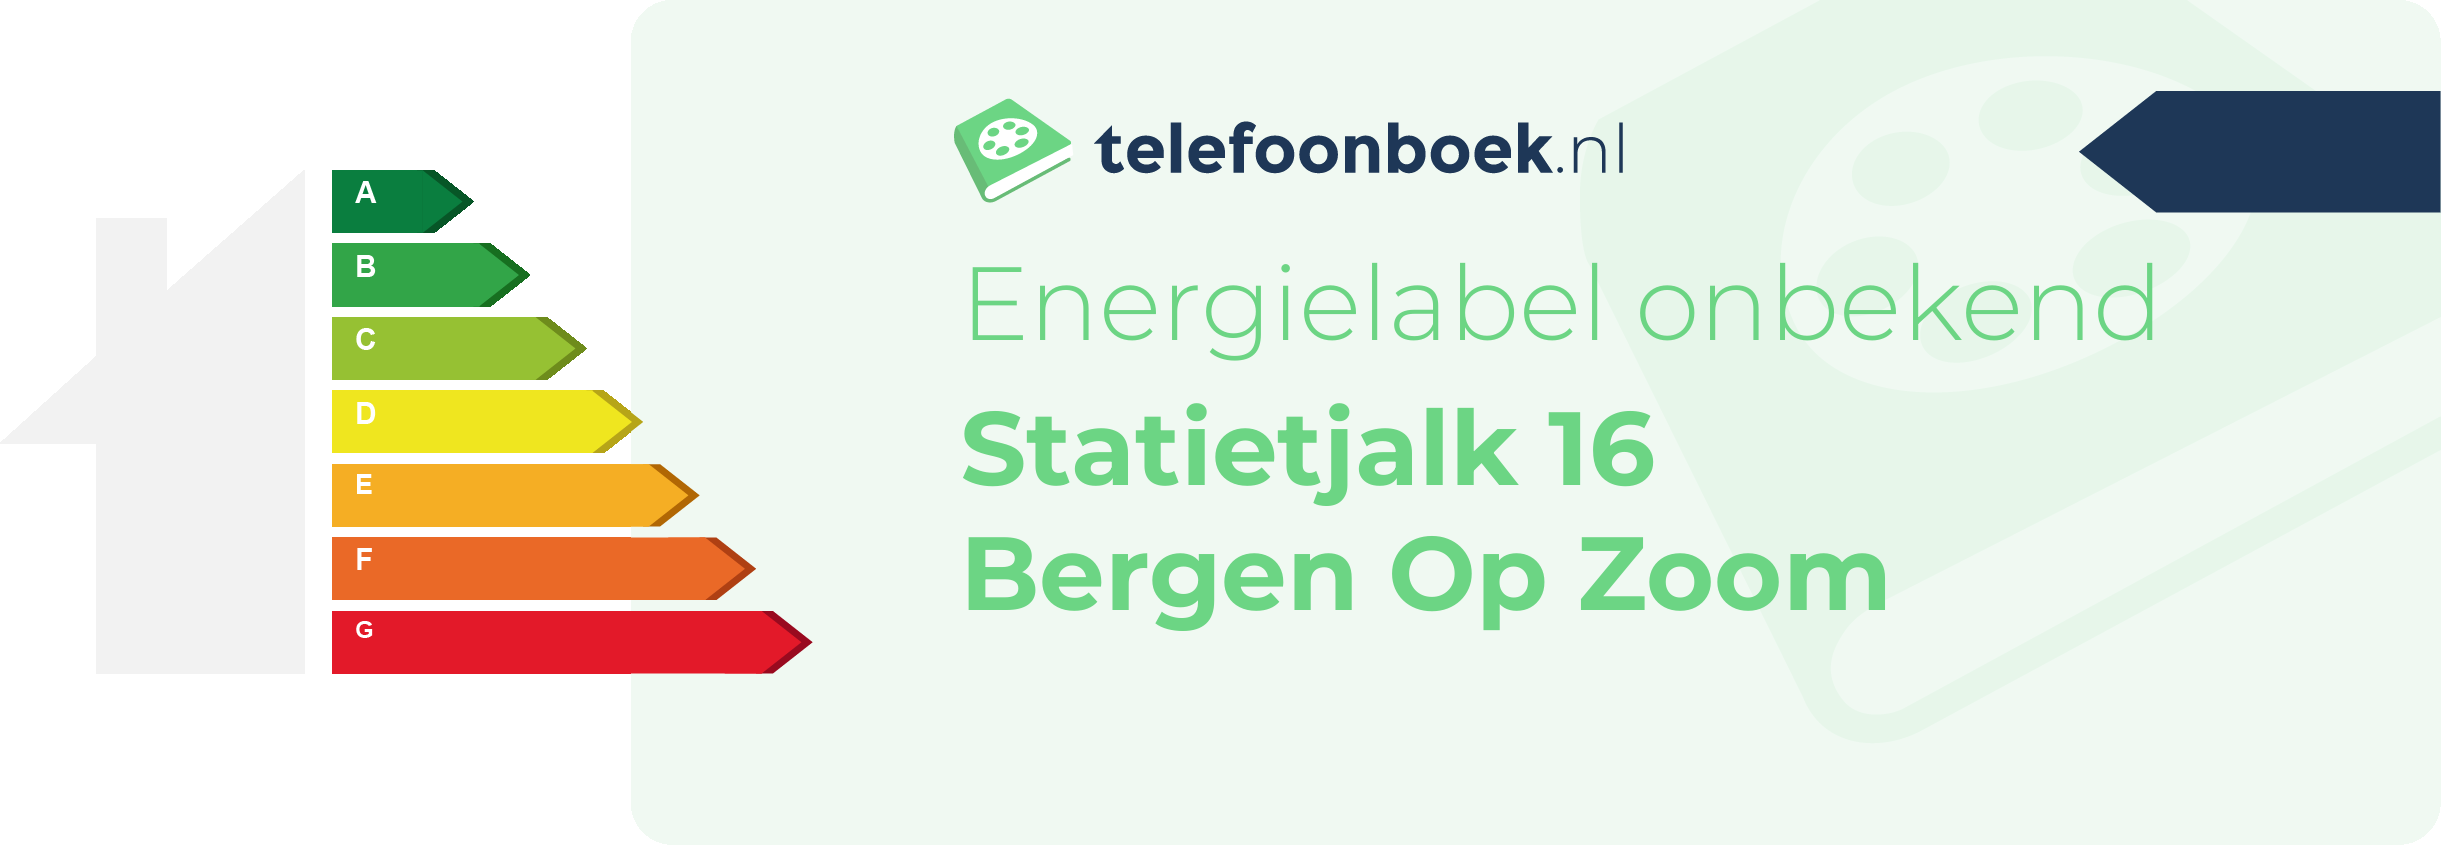 Energielabel Statietjalk 16 Bergen Op Zoom